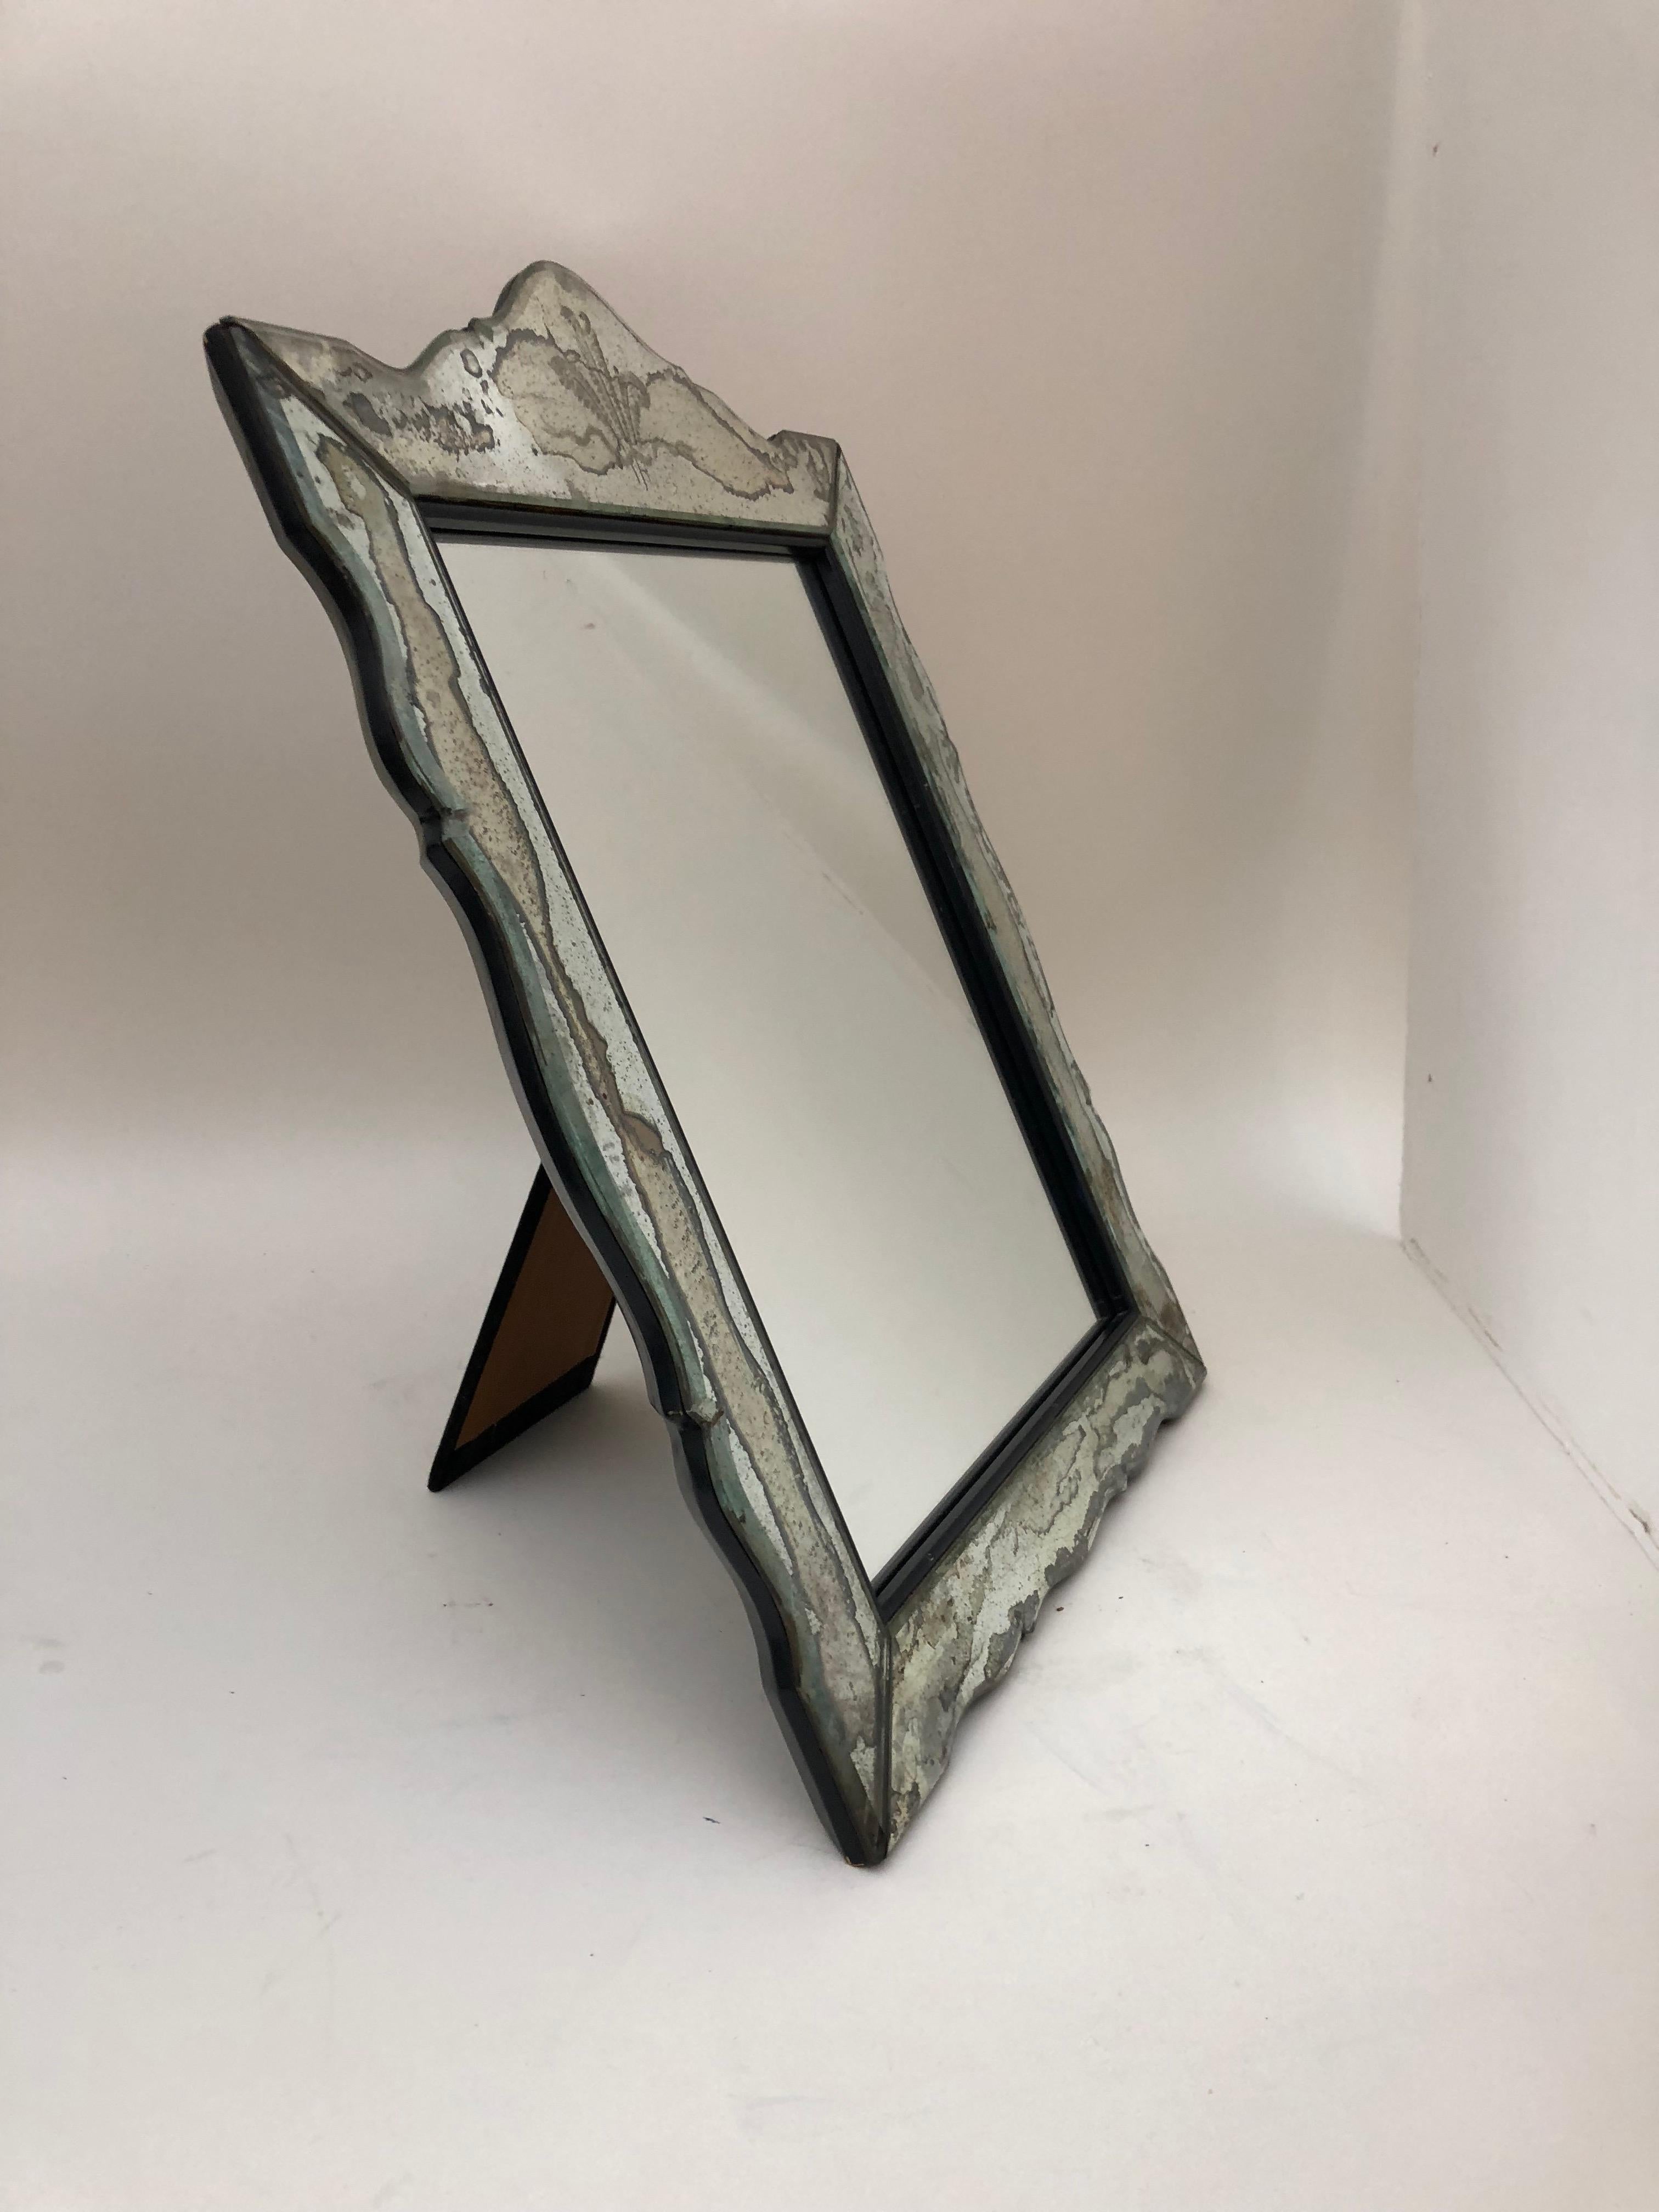 Ce miroir de coiffeuse anglais des années 1930 à encadrement miroir pourrait également servir de cadre pour une photographie. Sur la crête se trouvent trois panaches gravés à l'acide, l'emblème du jeune et beau Édouard, prince de Galles, qui est